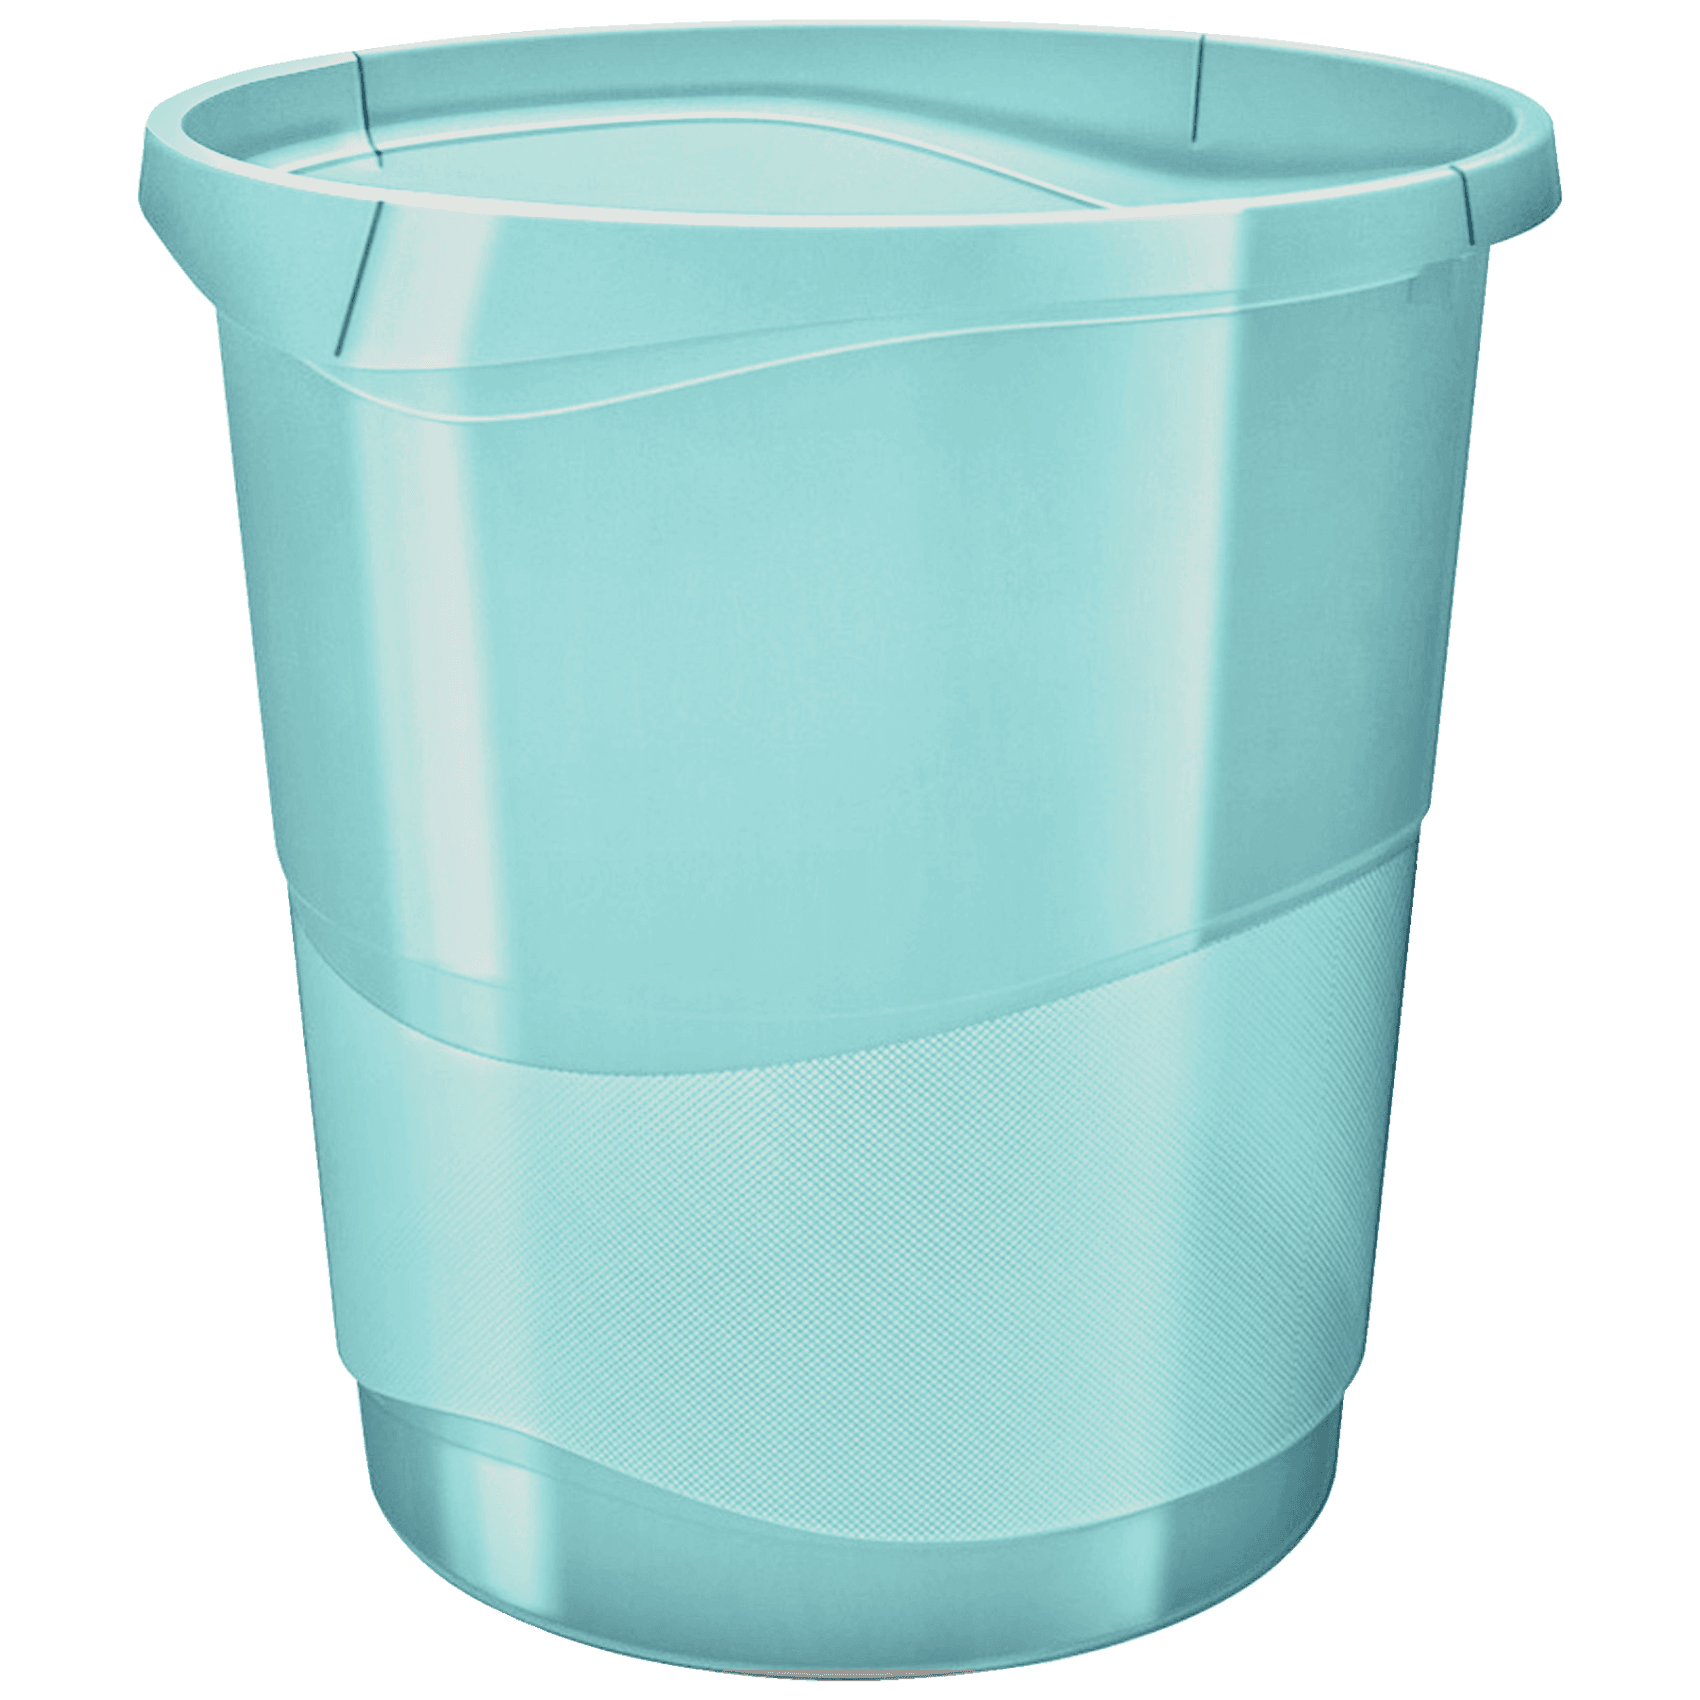 Odpadkový koš Esselte Colour'Ice, průhledná modrá, 14 l